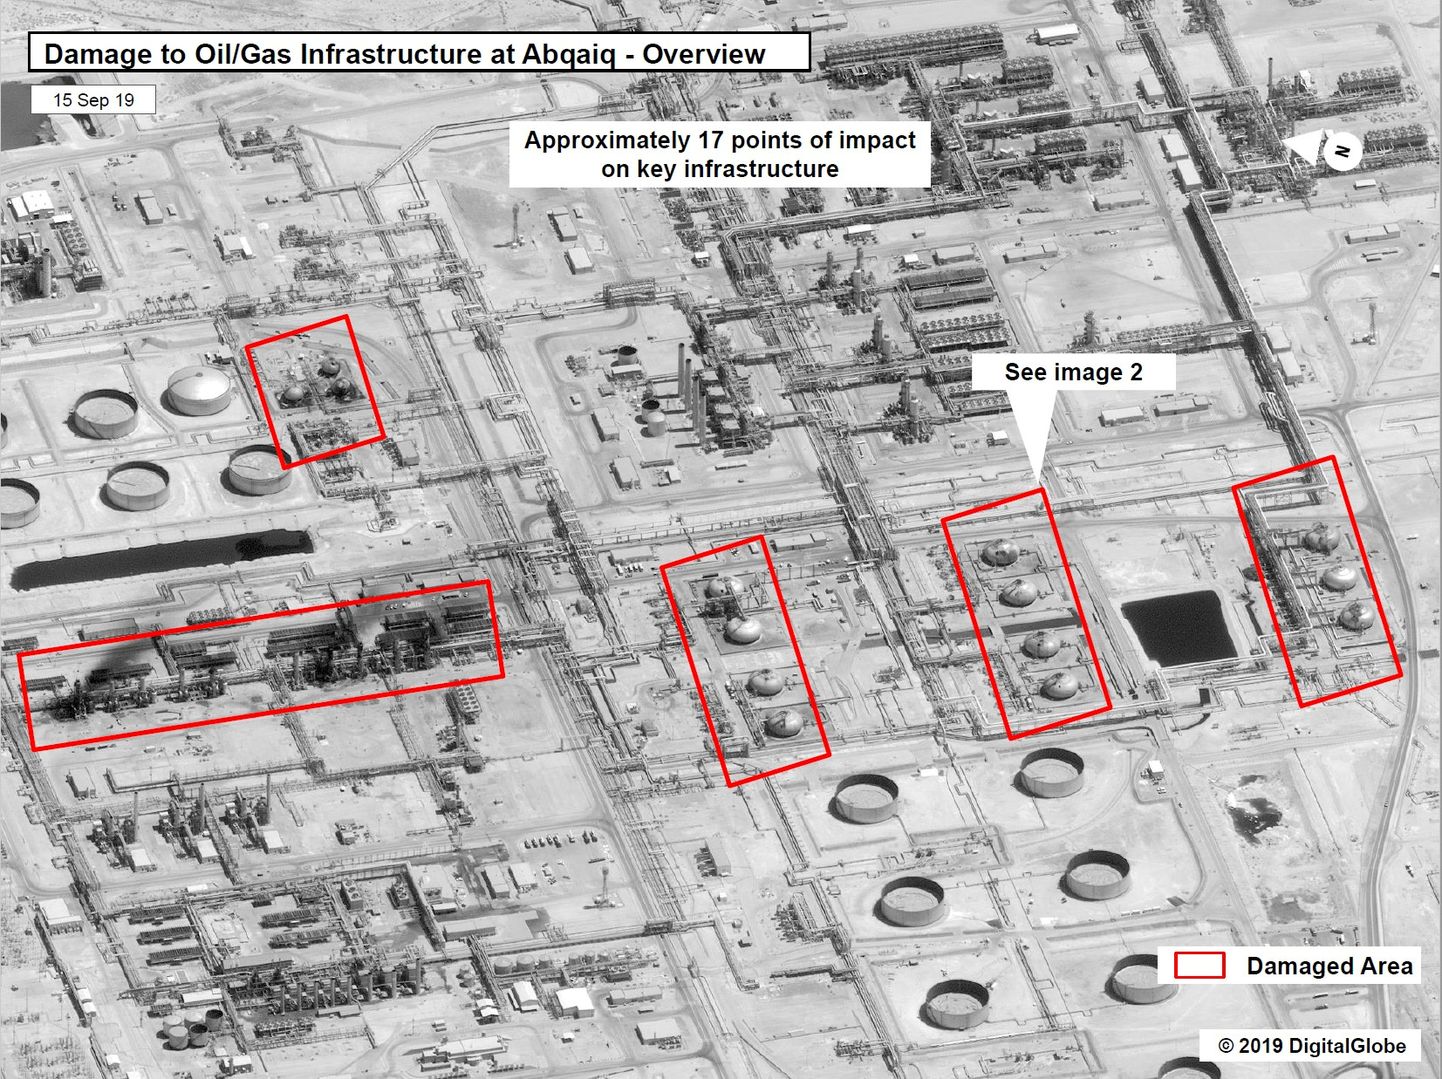 USA jagatud pilt kahjust Saudi Araabia Abqaiqi naftatehases, mida tabas laupäeval droonirünnak.